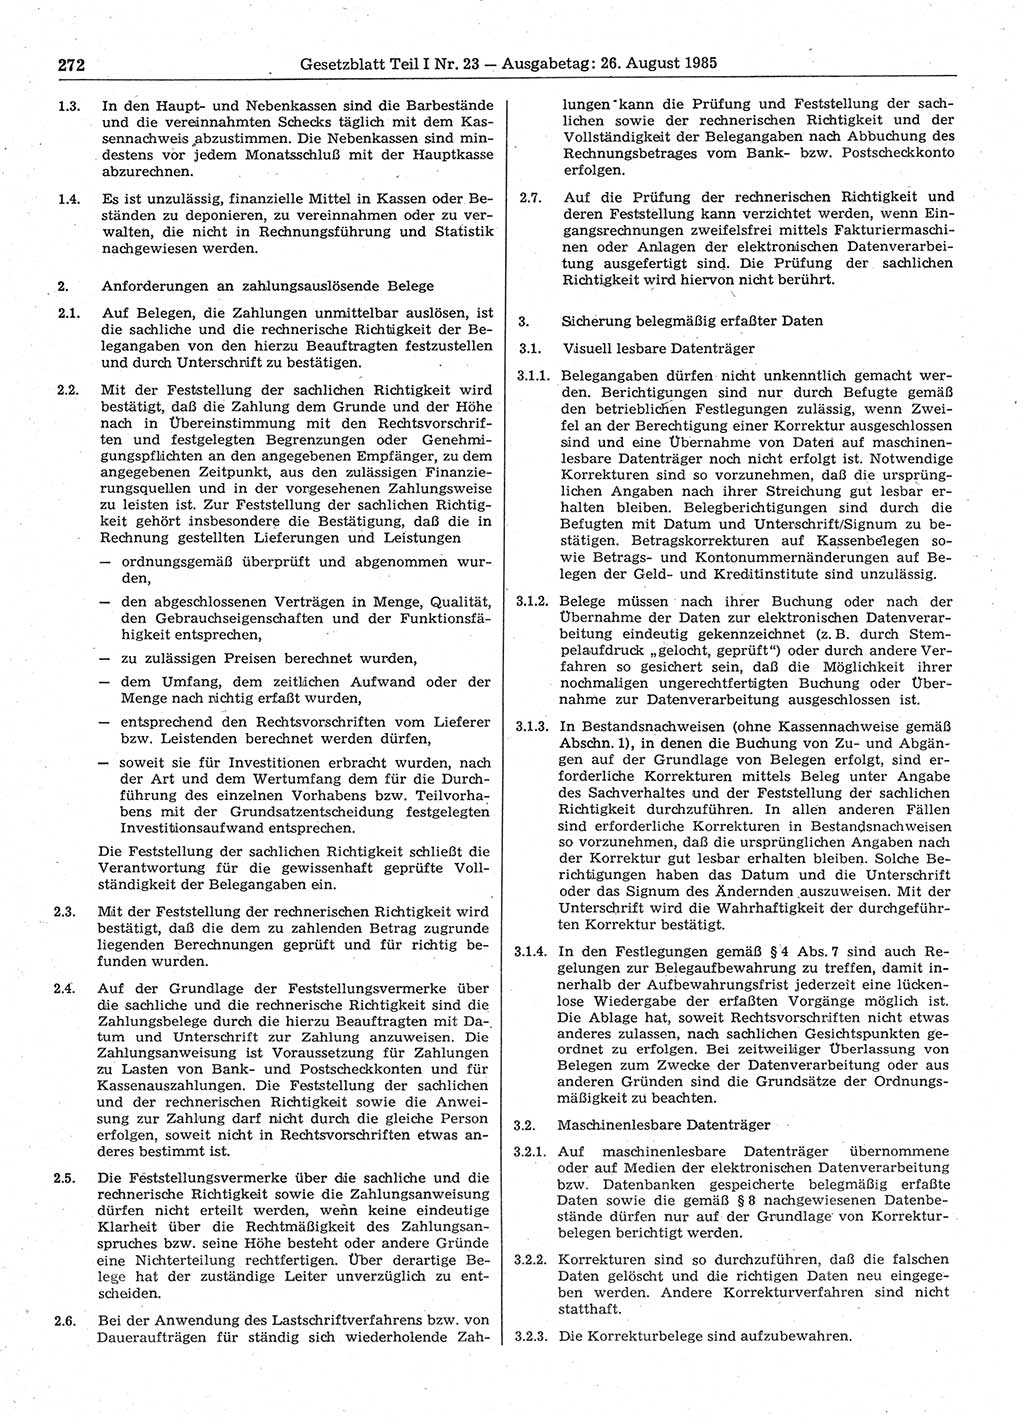 Gesetzblatt (GBl.) der Deutschen Demokratischen Republik (DDR) Teil Ⅰ 1985, Seite 272 (GBl. DDR Ⅰ 1985, S. 272)